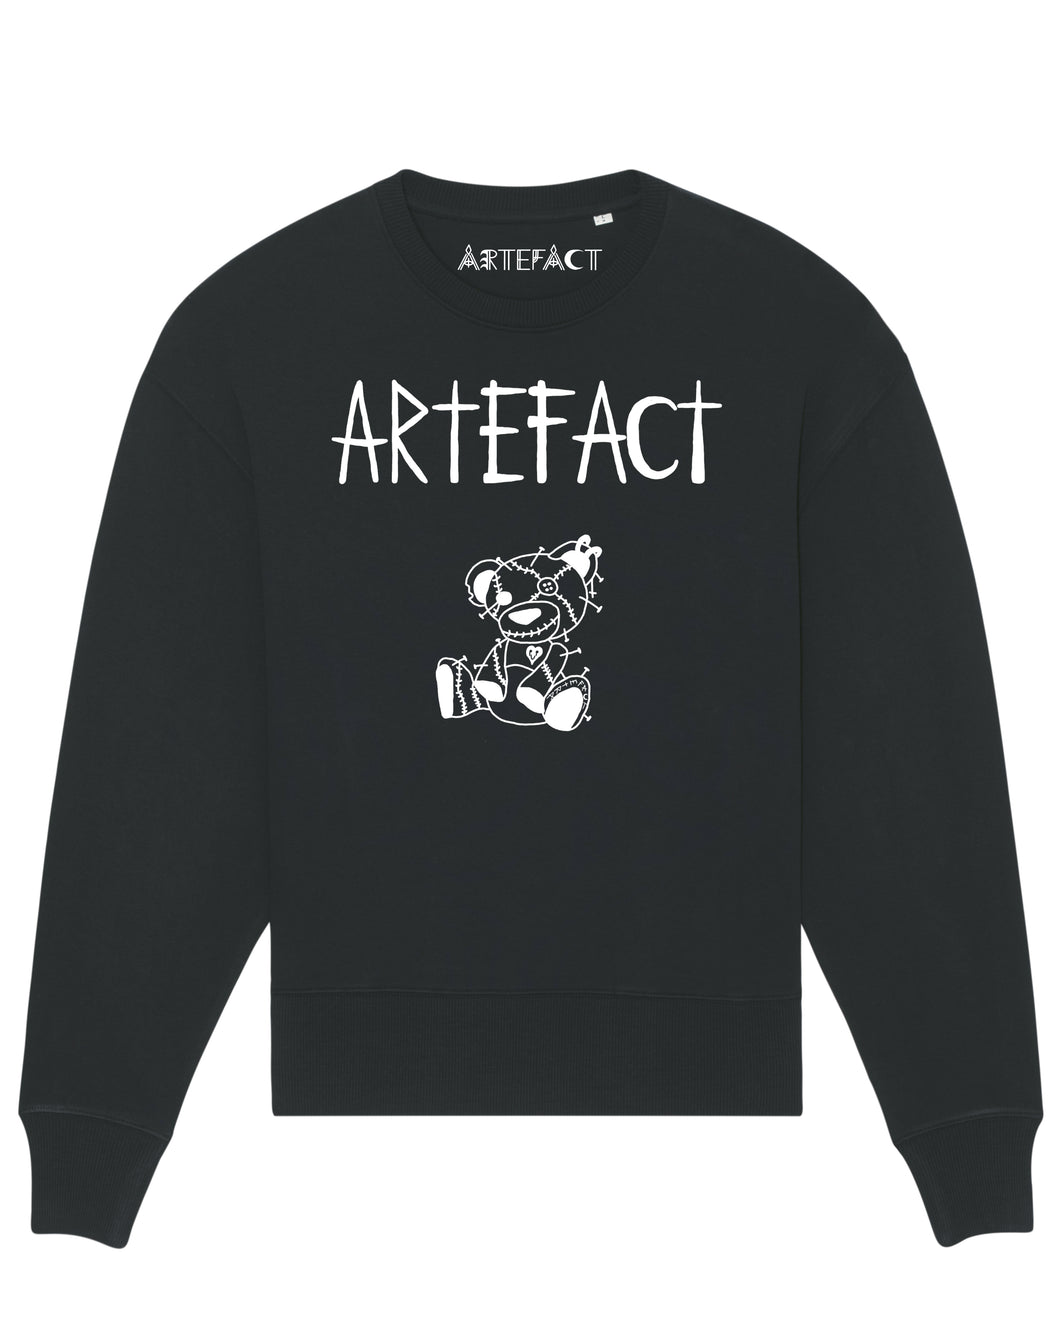 Sweater artefact co réalisé et designé en France de manière artisanale, imprimé en sérigraphie. Scoot culture 